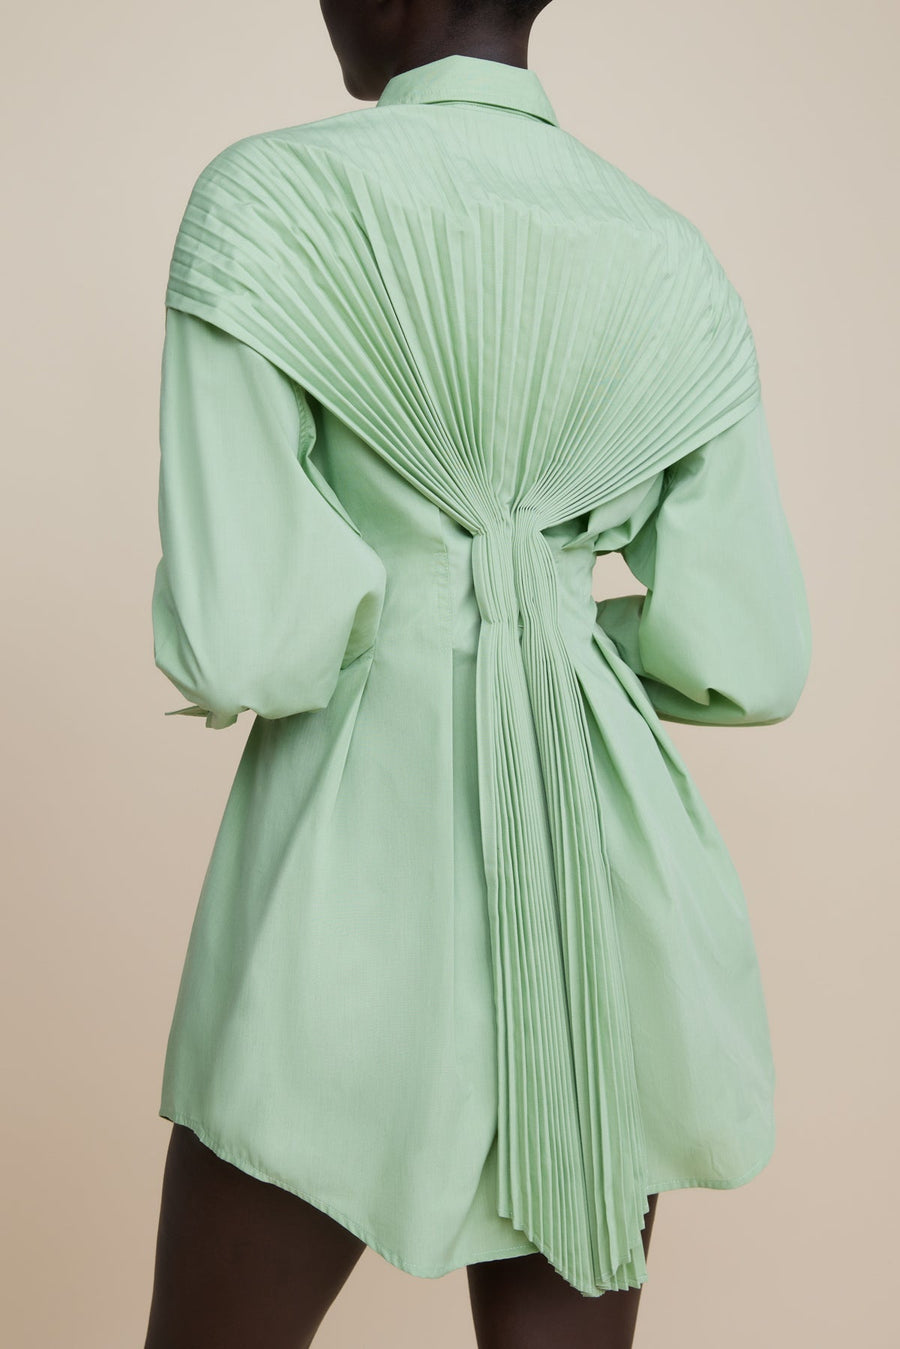 Acler - The Orbel Dress in Foam Green